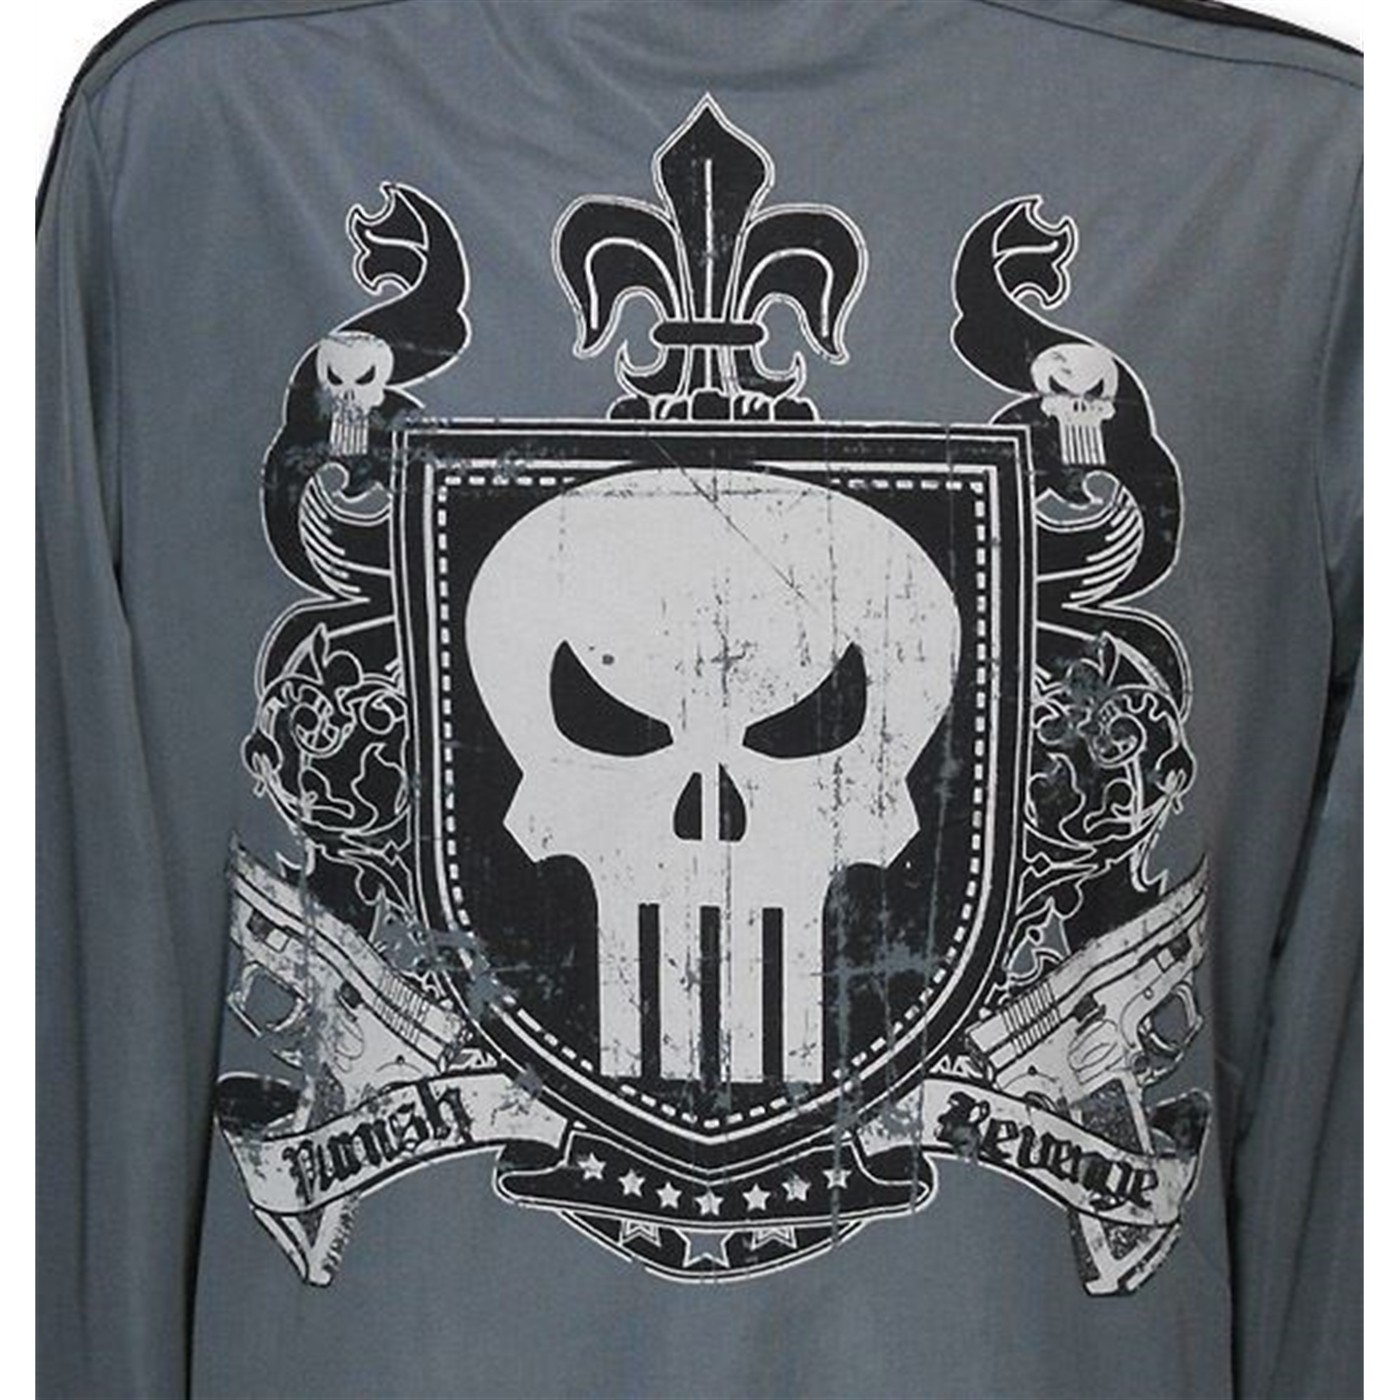 Punisher Symbol Track Jacket